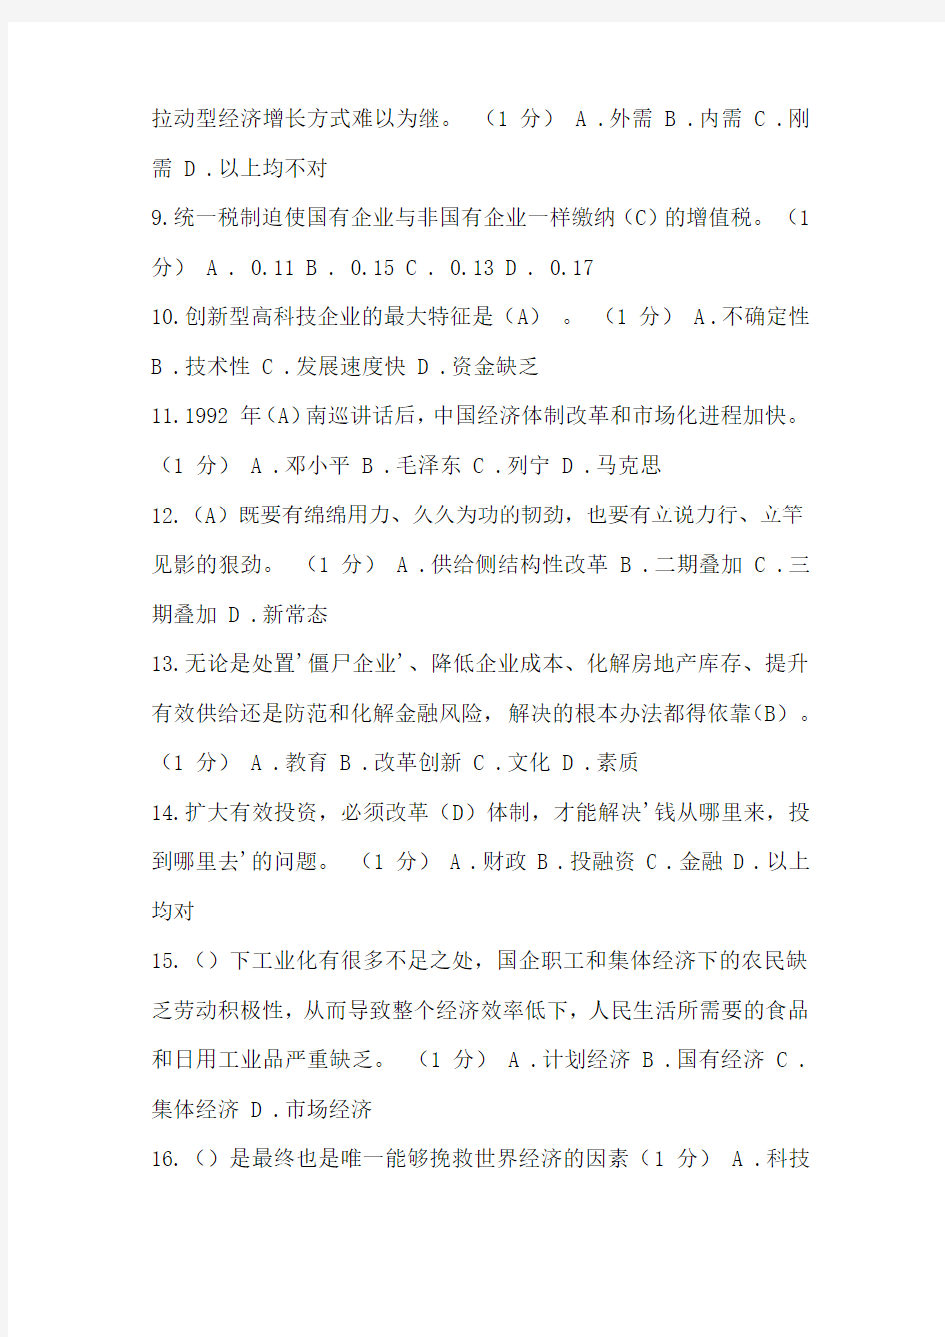 2016 年重庆市新取得中级职称专业技术人员岗前培训试题答案(供给侧结构性改革专题讲座)